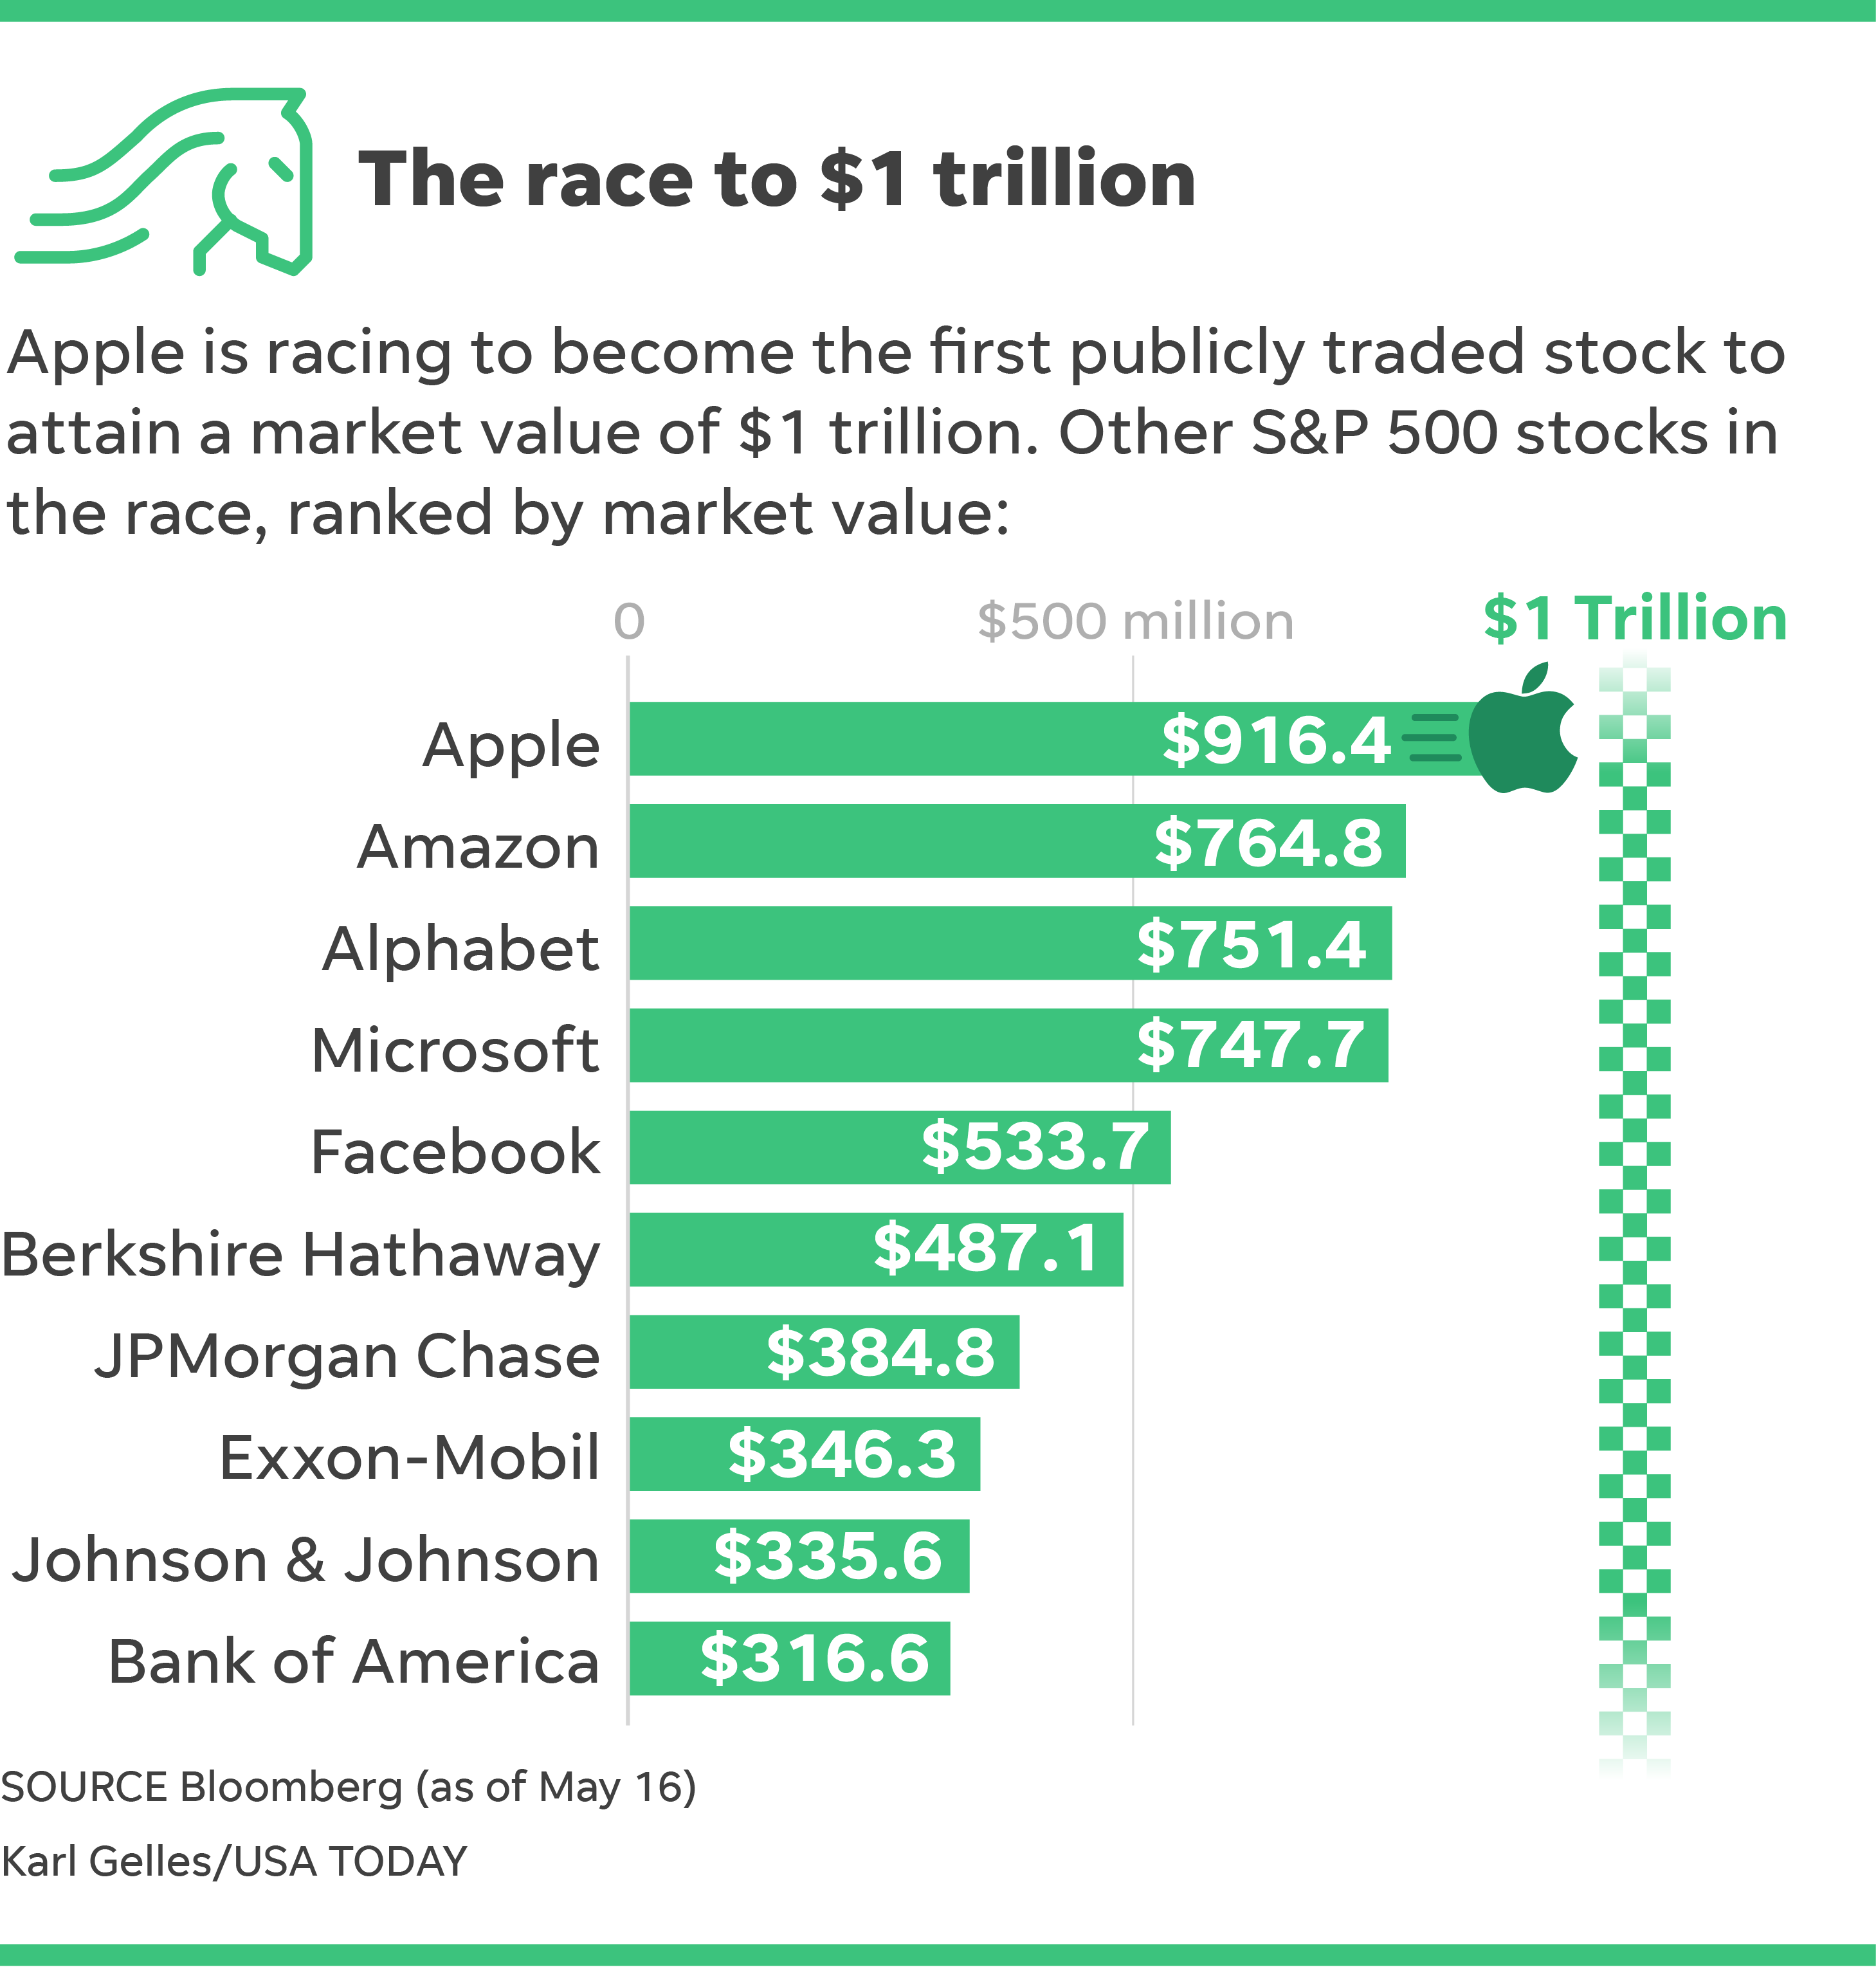 Don't own Apple stock? Actually, you do